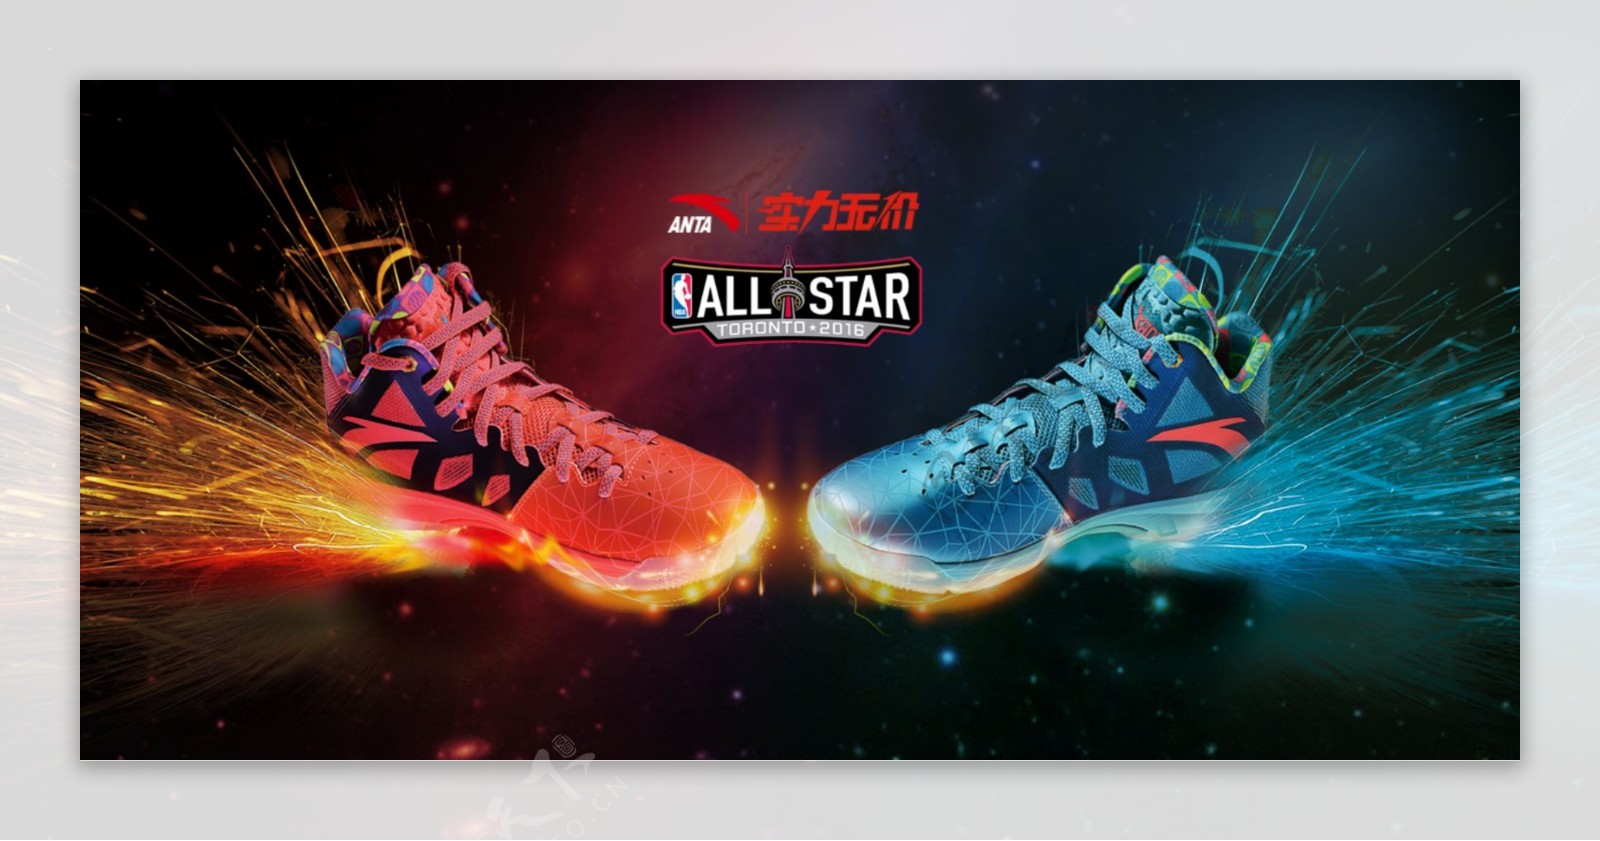 篮球鞋海报